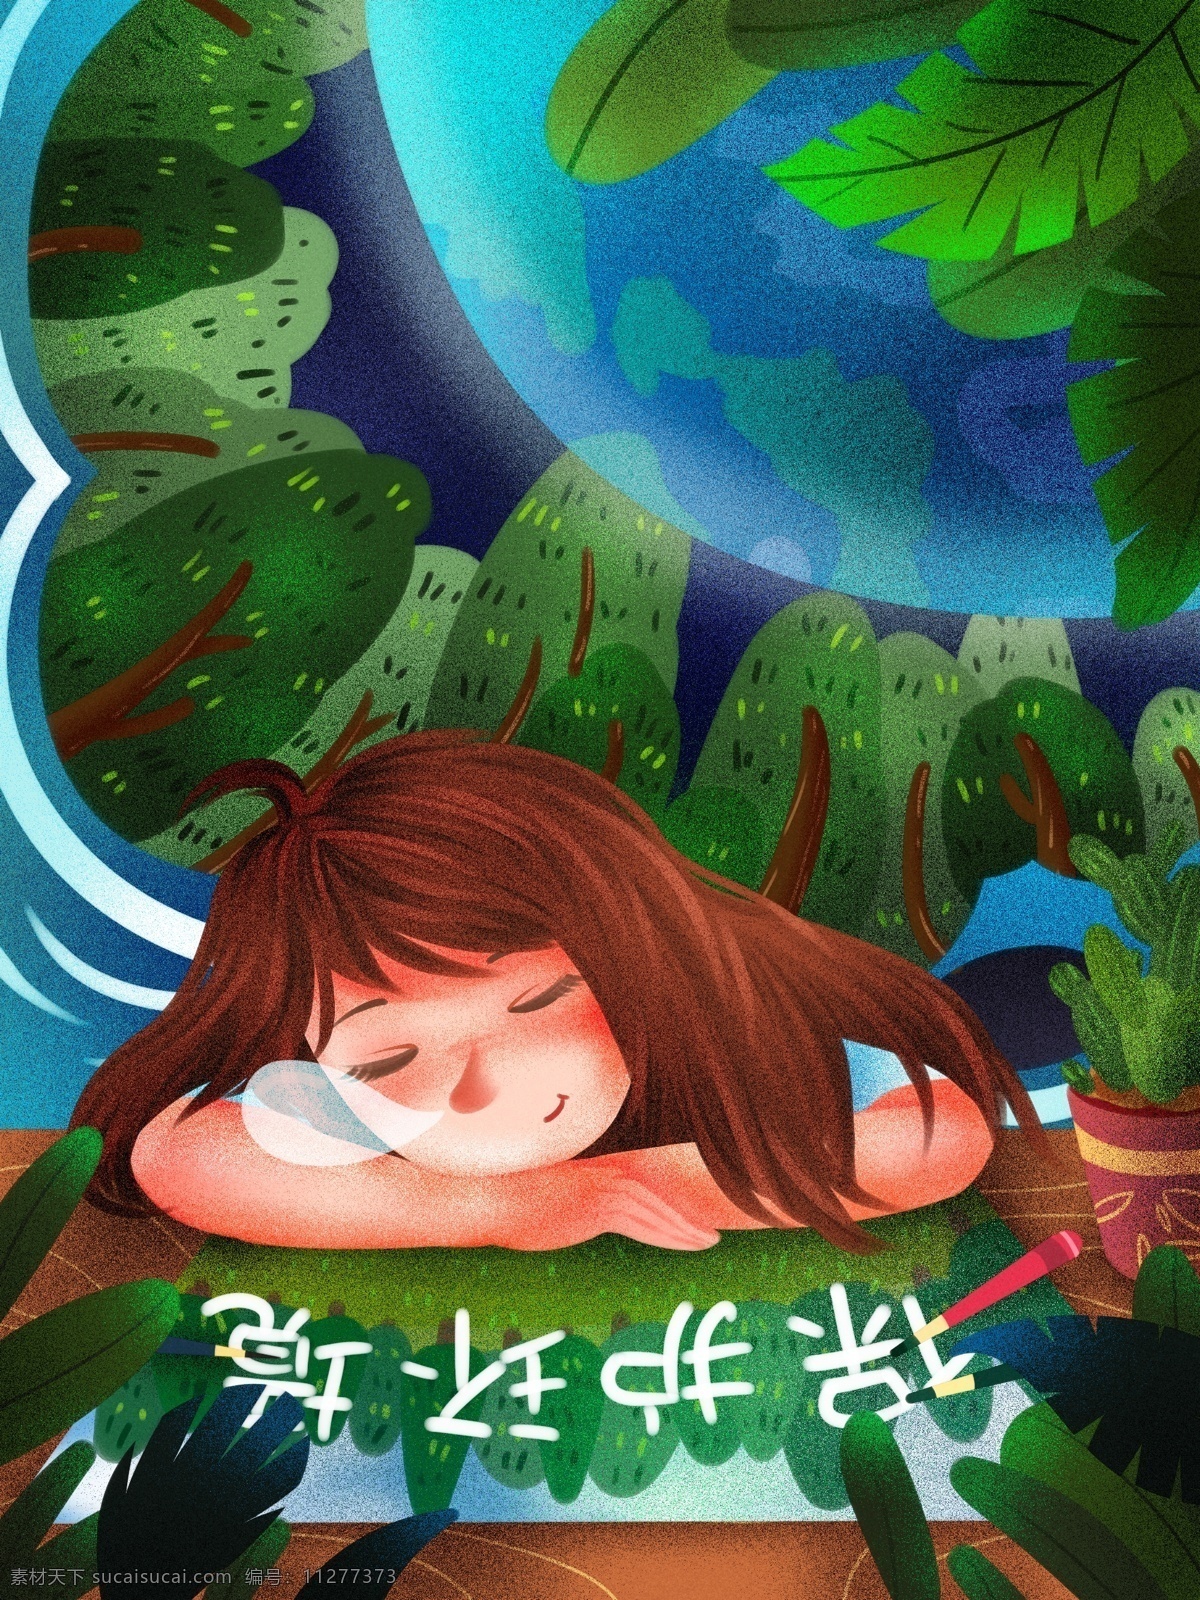 世界环境日 梦里 保护 地球 环境 清新 插画 保护环境 爱护环境 梦中 熟睡 绿色 蓝色 女孩 画笔